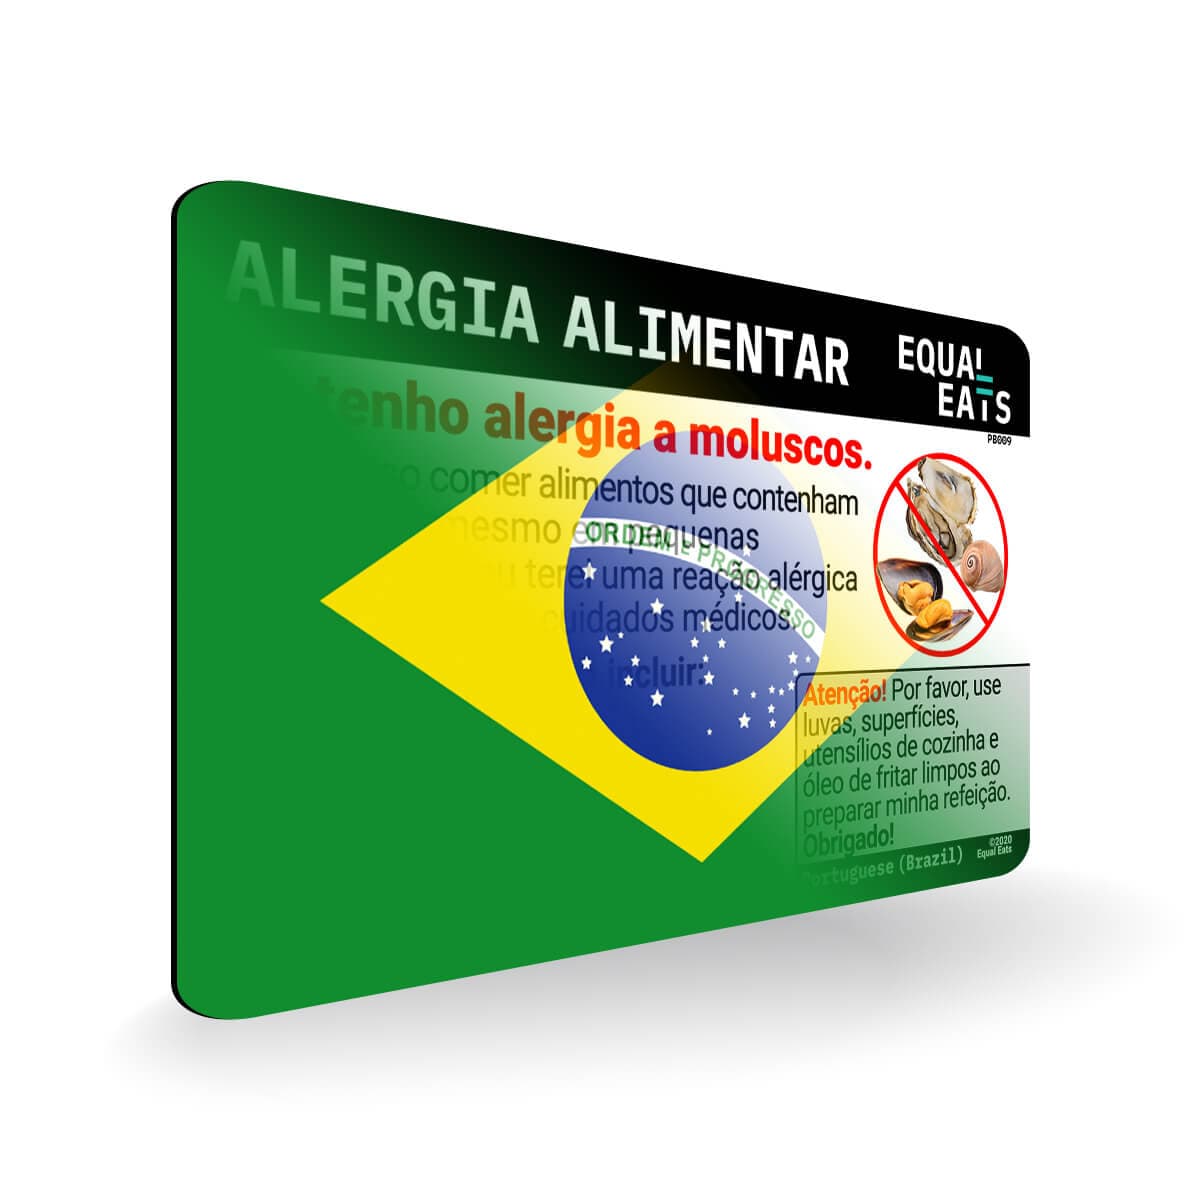 Mollusk Allergy in Portuguese. Mollusk Allergy Card for Brazil